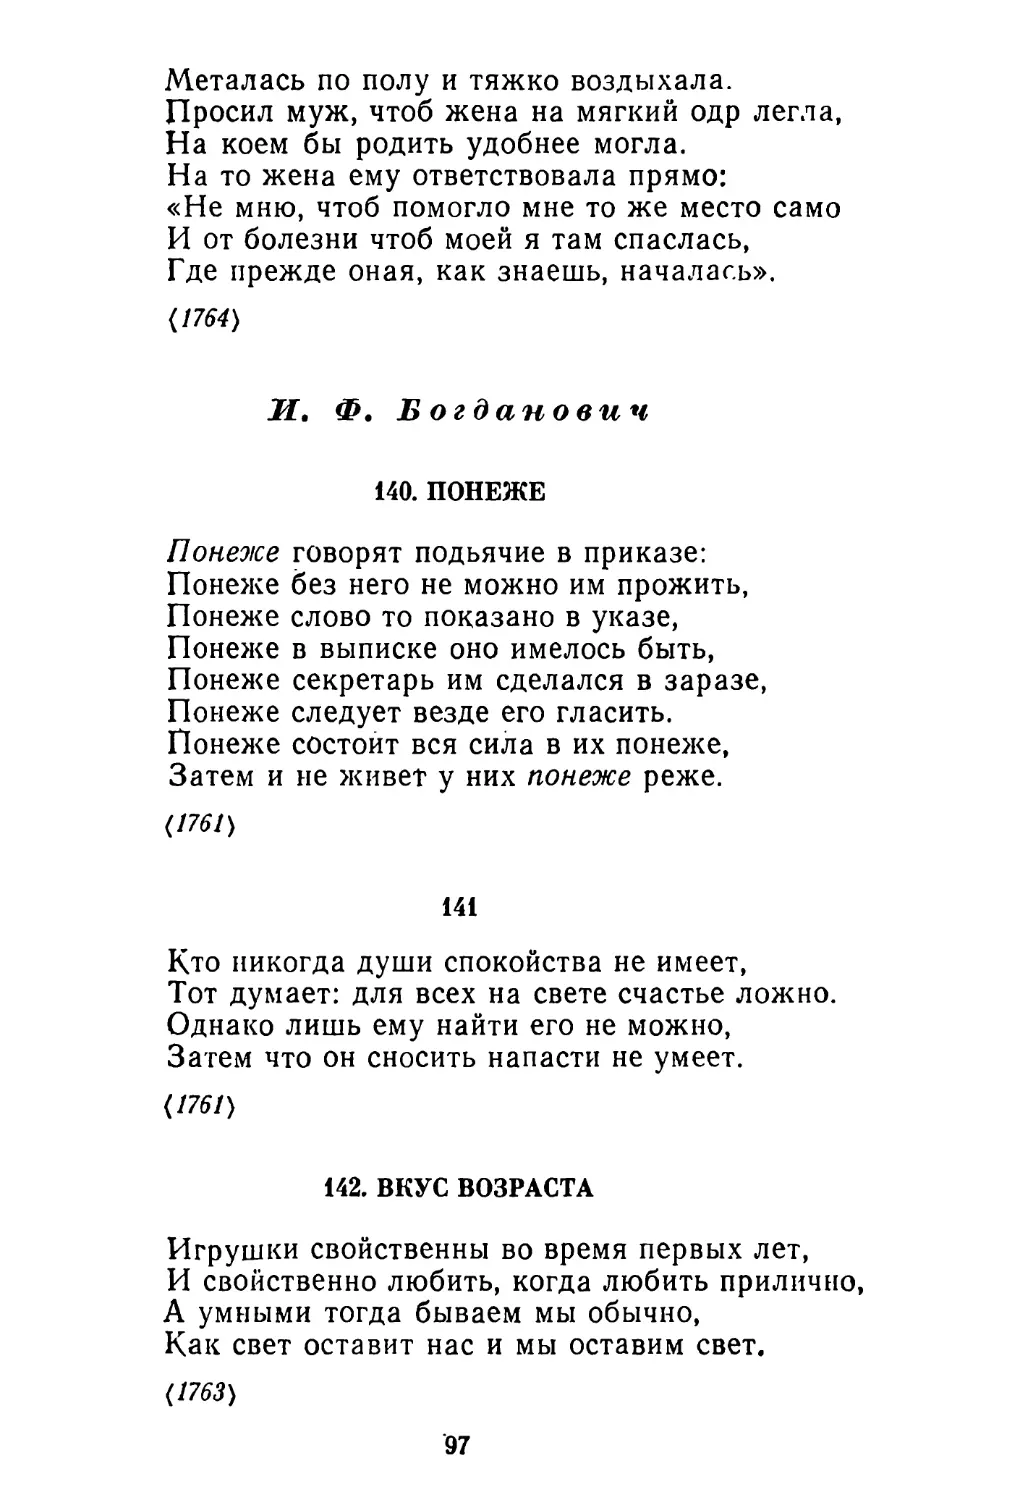 И. Ф. Богданович